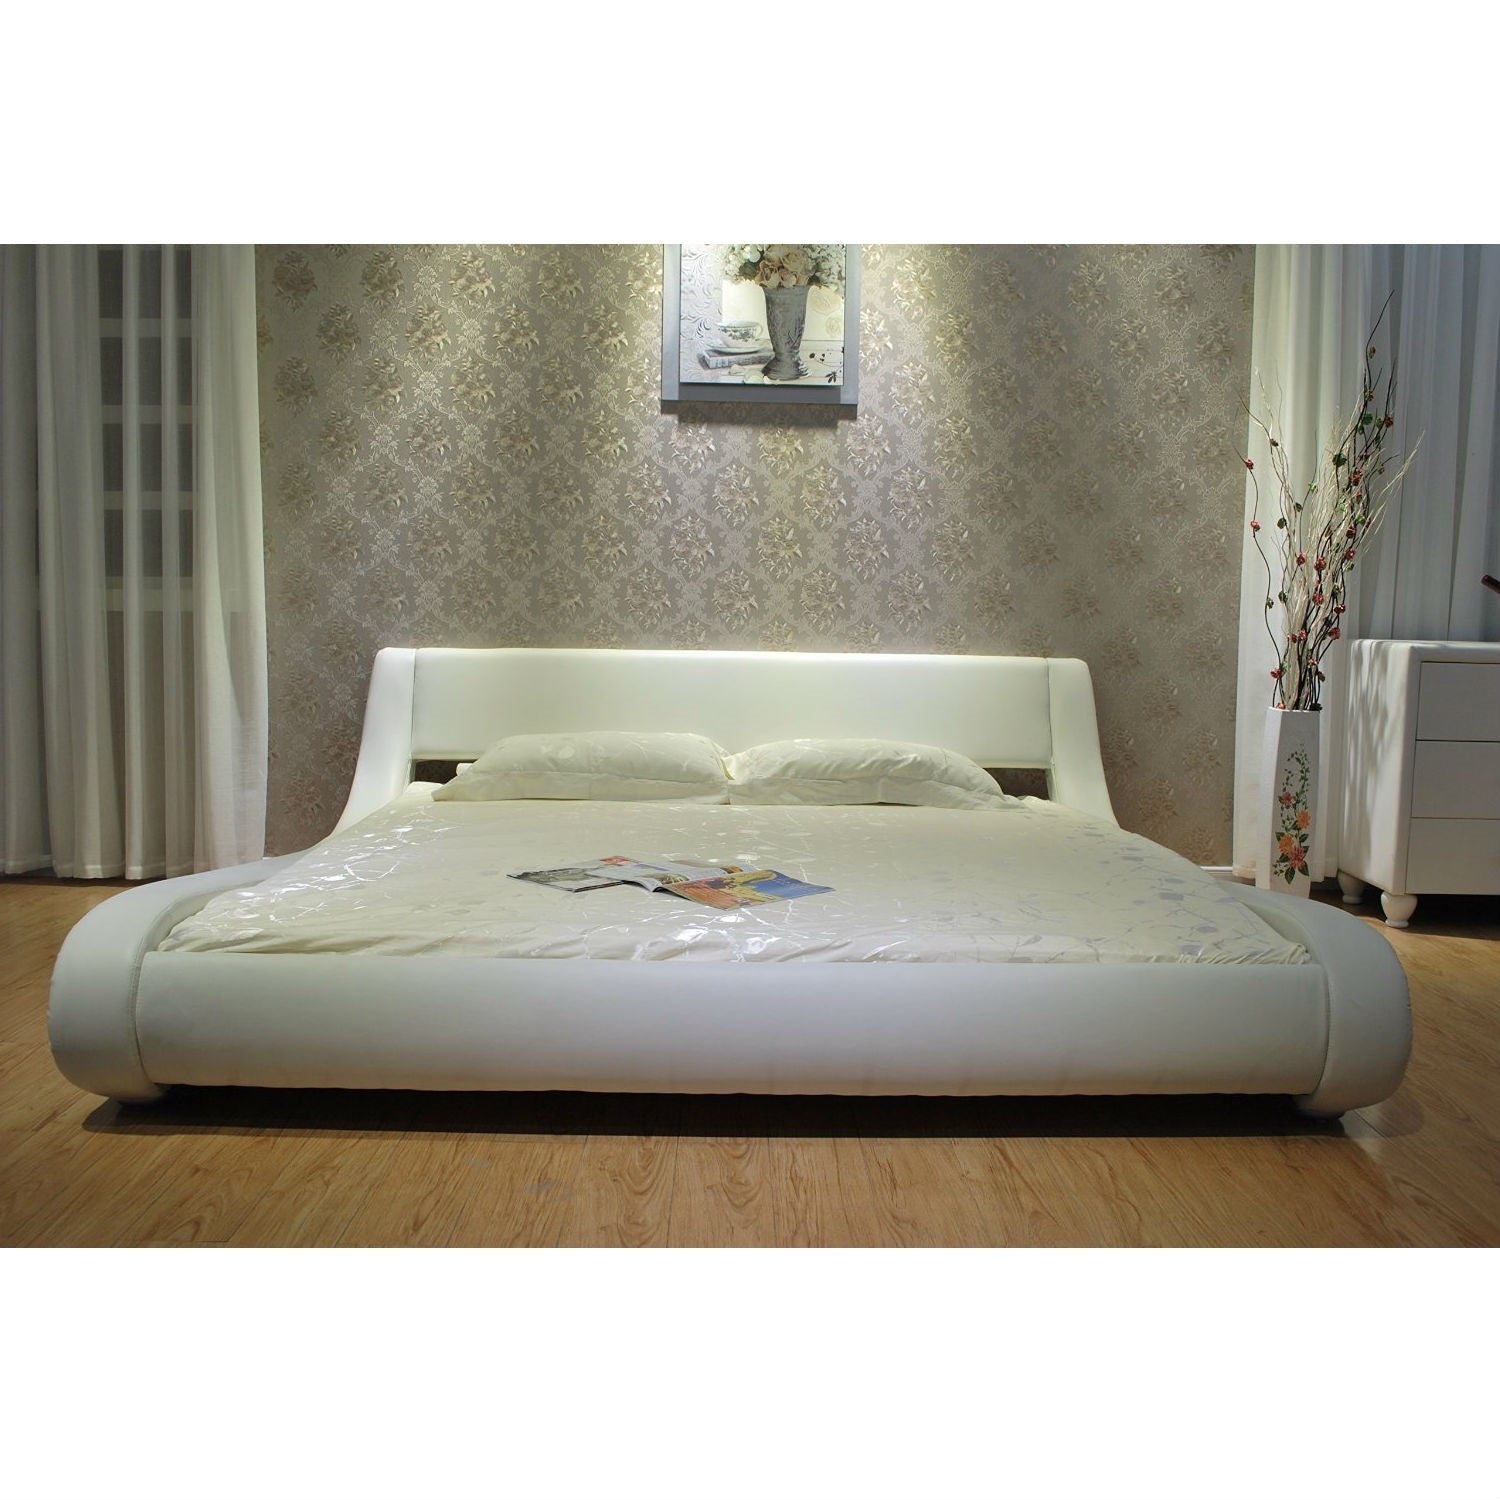 Bedroom > Bed Frames > Platform Beds - Queen Modern White Upholstered Platform Bed With Curved Sides & Headboard